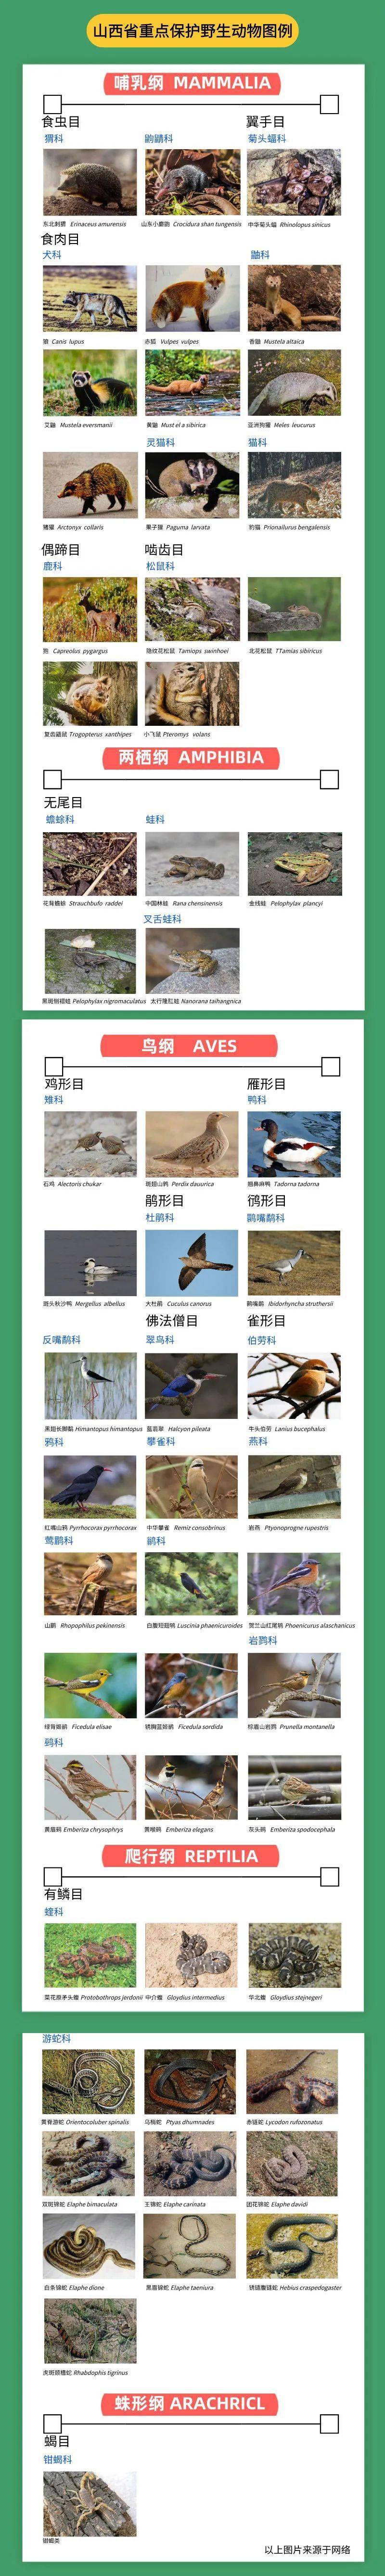 野生动物保护名录名单图片